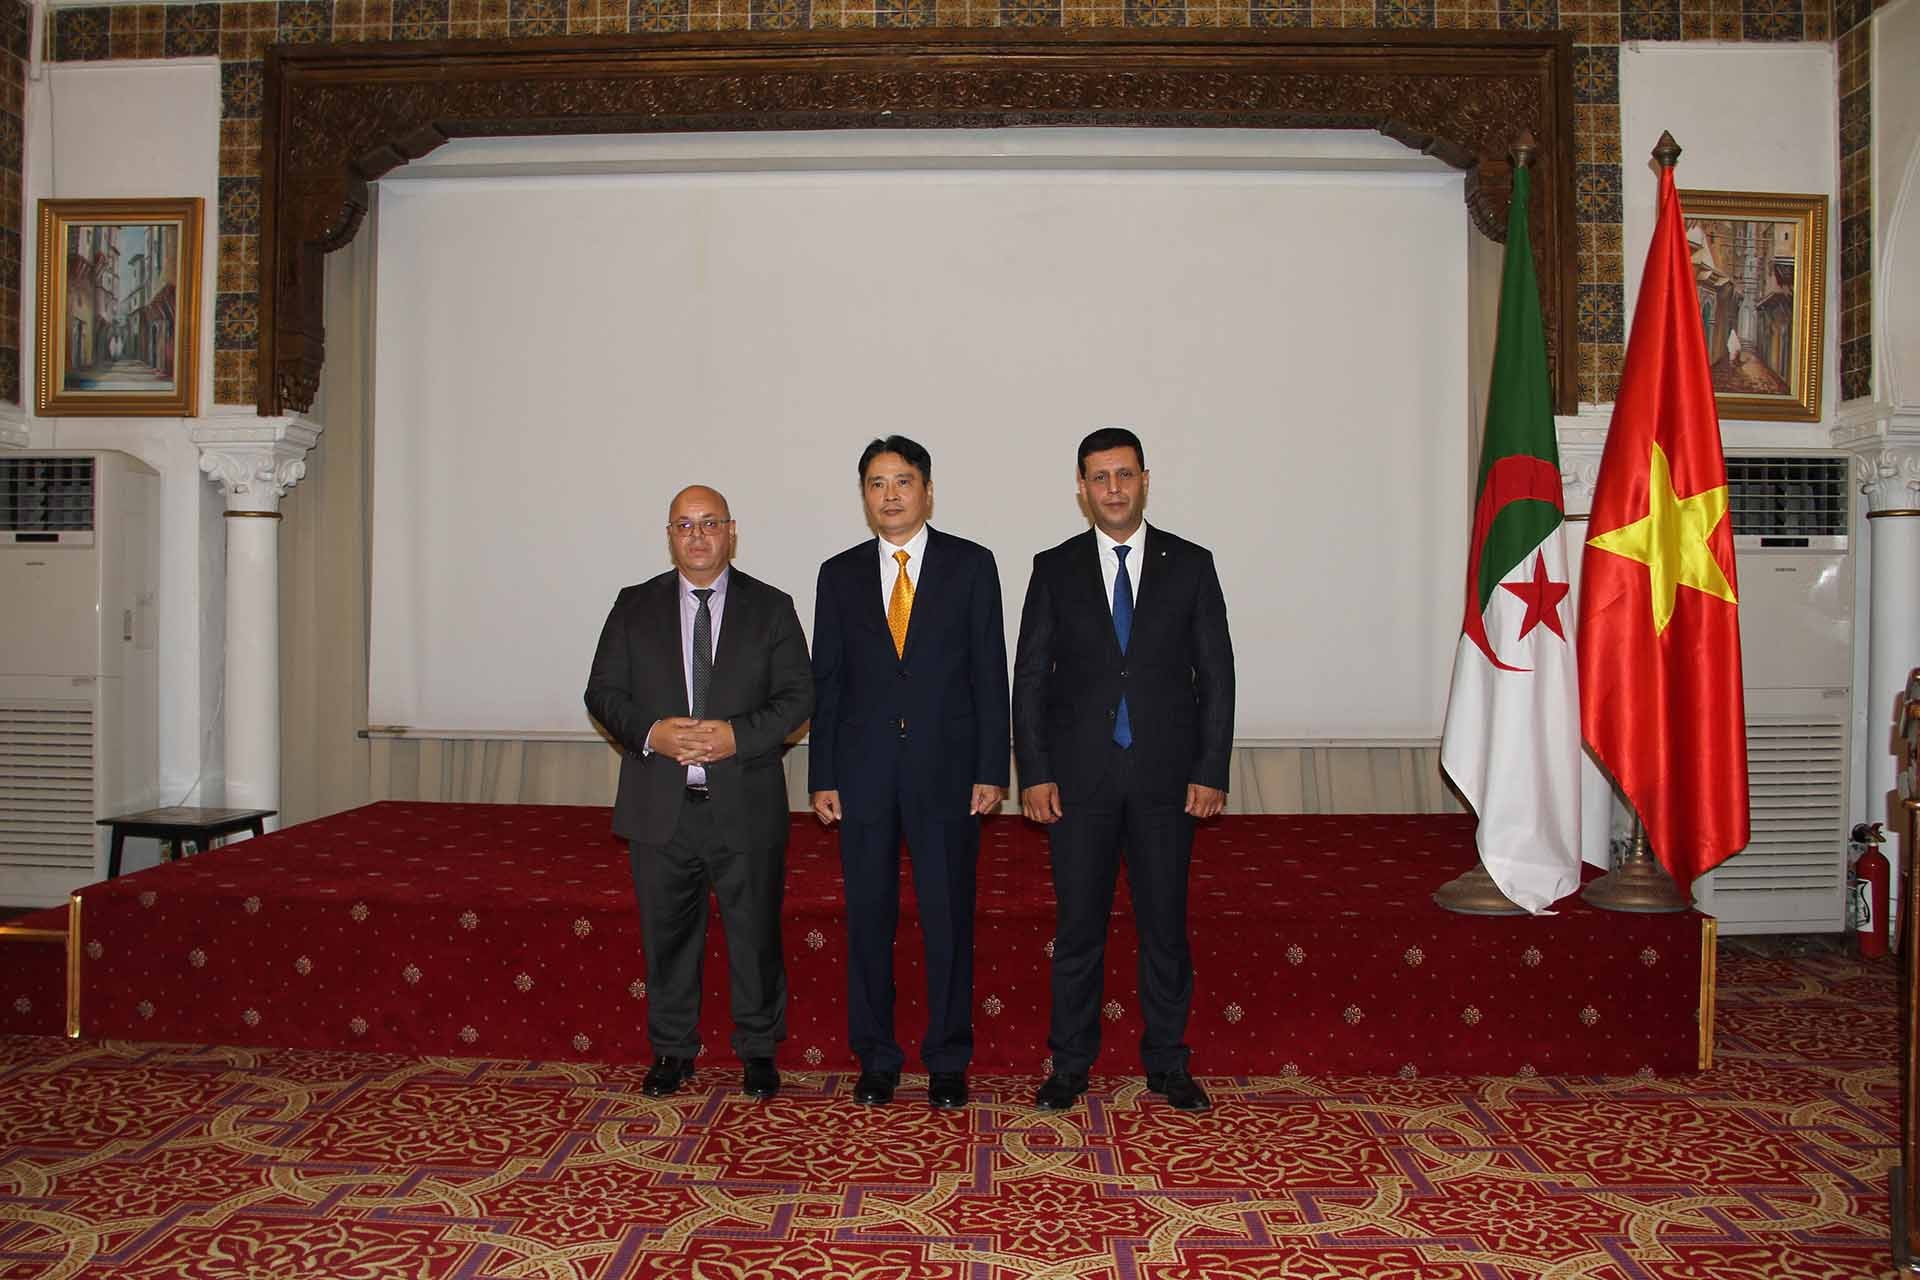 Đại sứ Nguyễn Thành Vinh và Bộ trưởng Bộ Cựu chiến binh và Người có công Algeria, Bộ trưởng Bộ Du lịch và Thủ công mỹ nghệ Algeria.